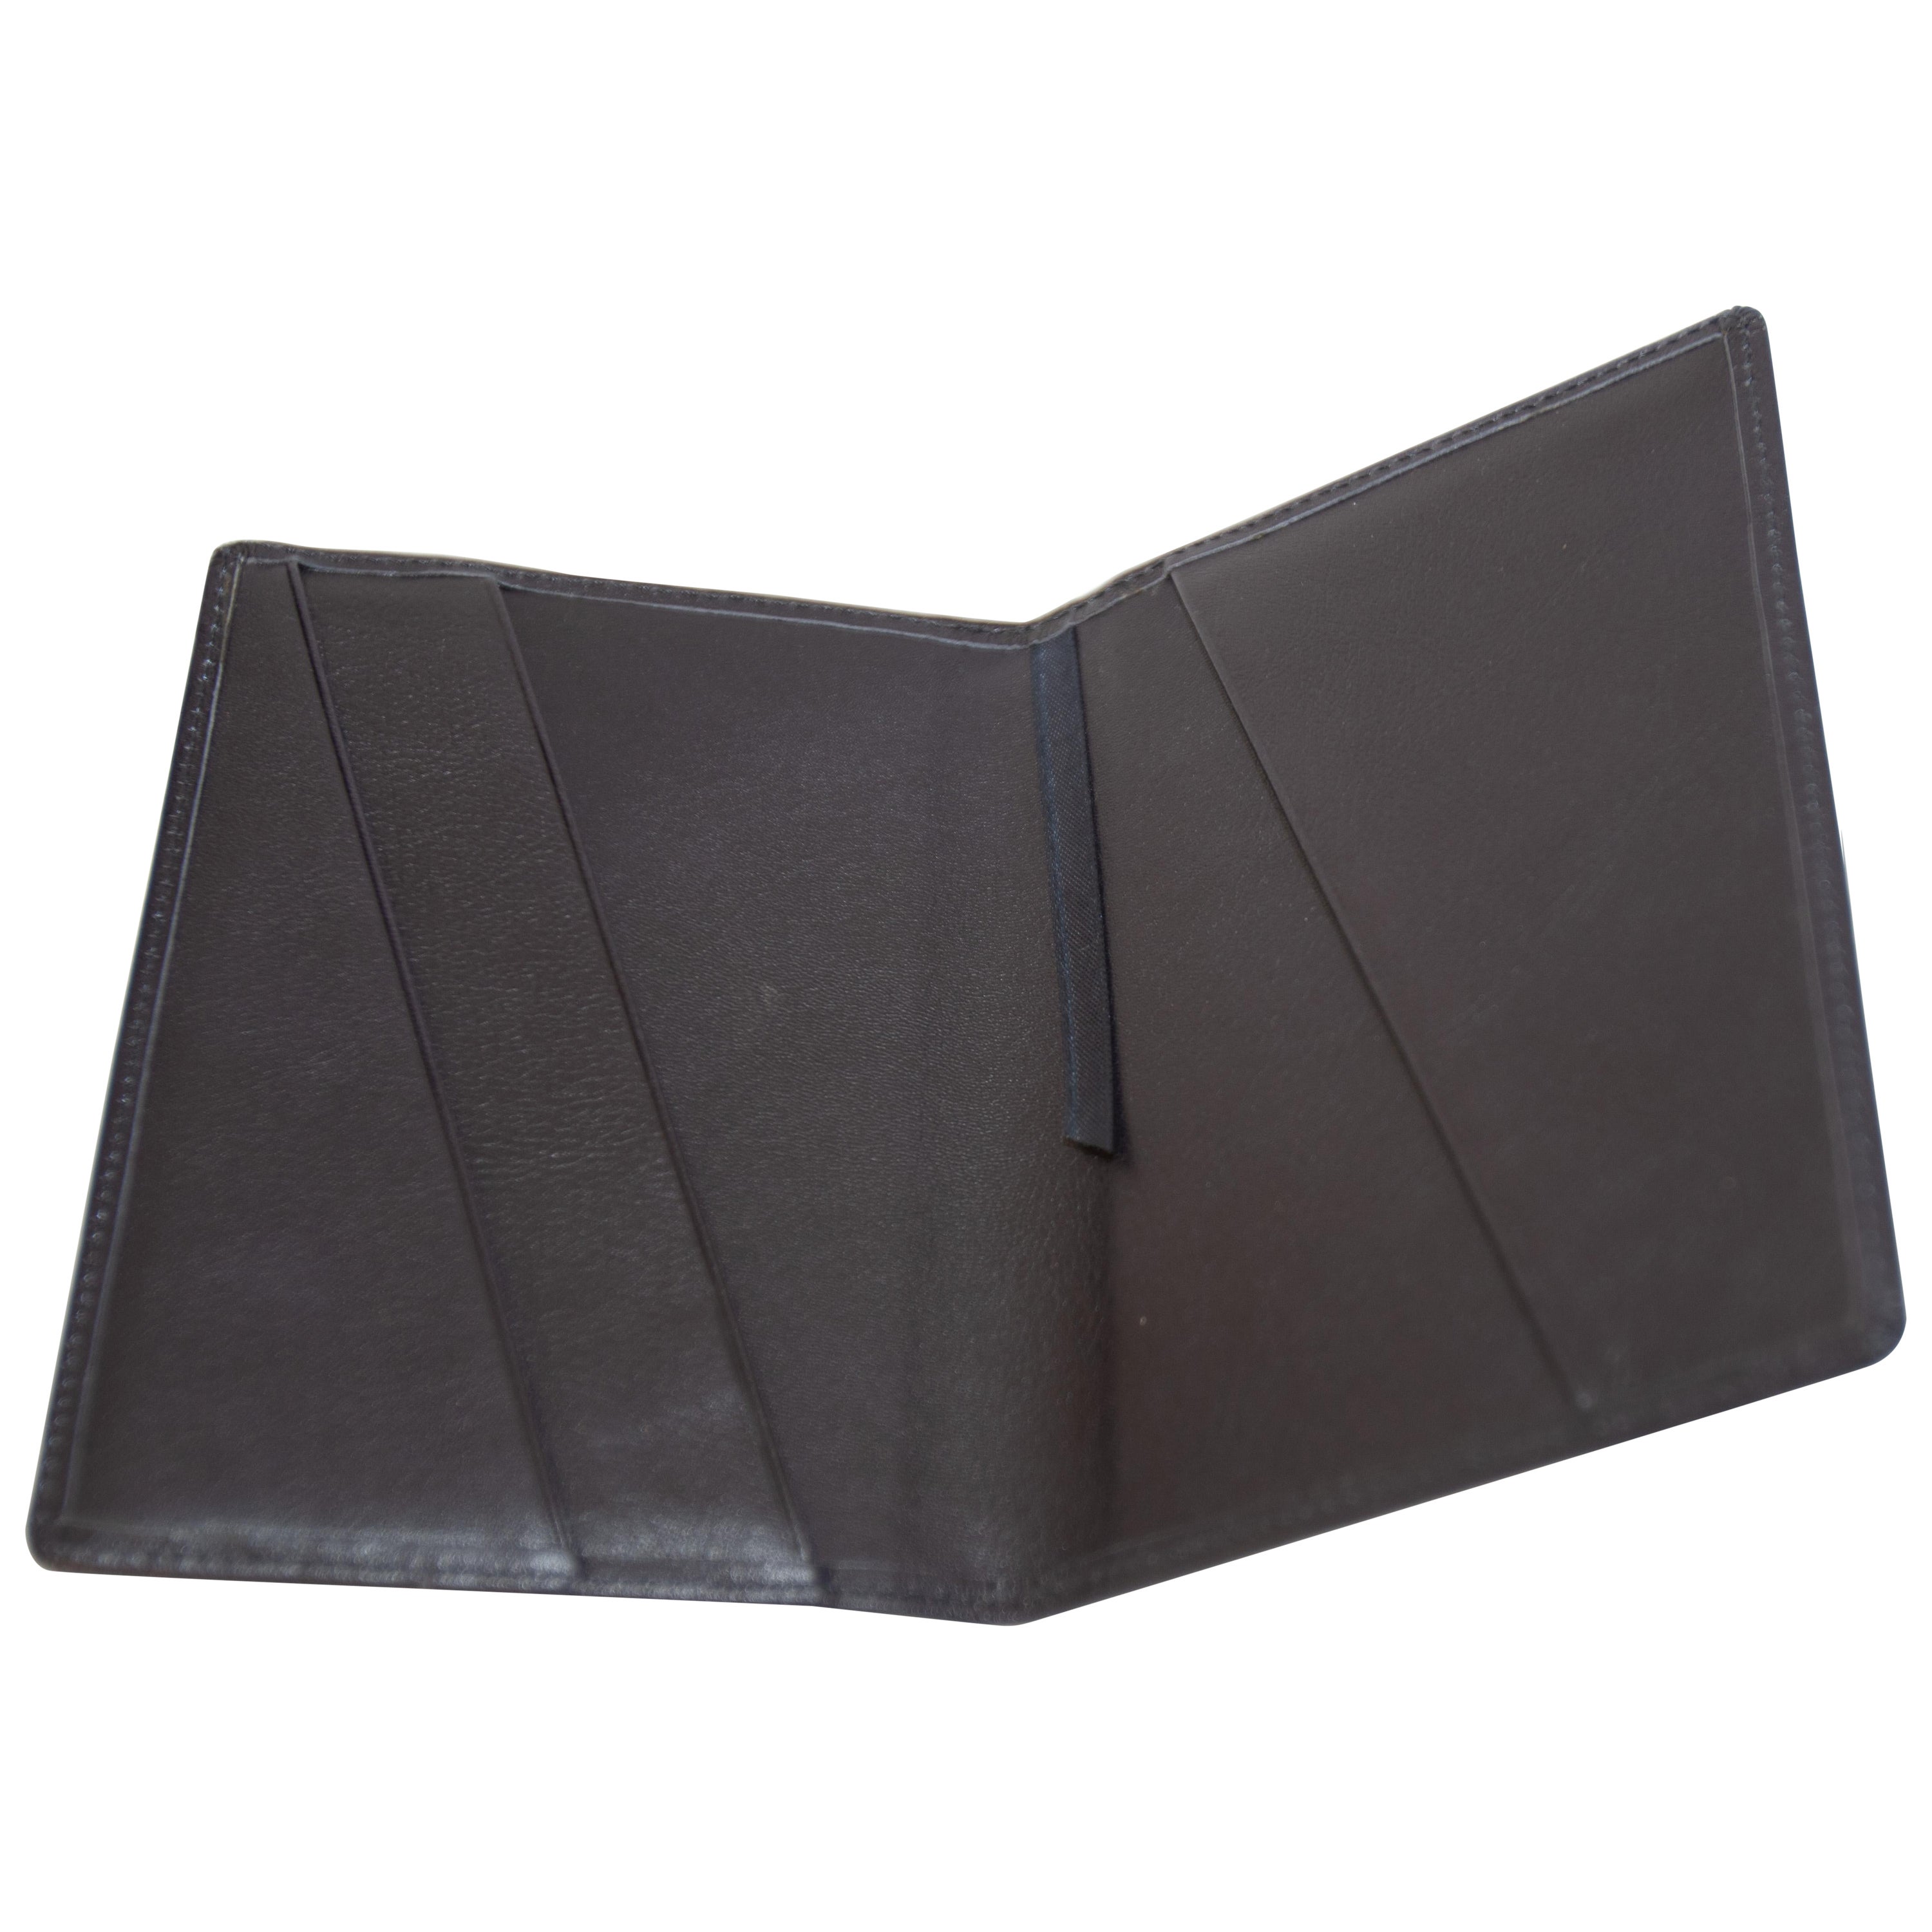 Want Les Essentiels de la Vie Passport Black Leather Passport Cover For Sale